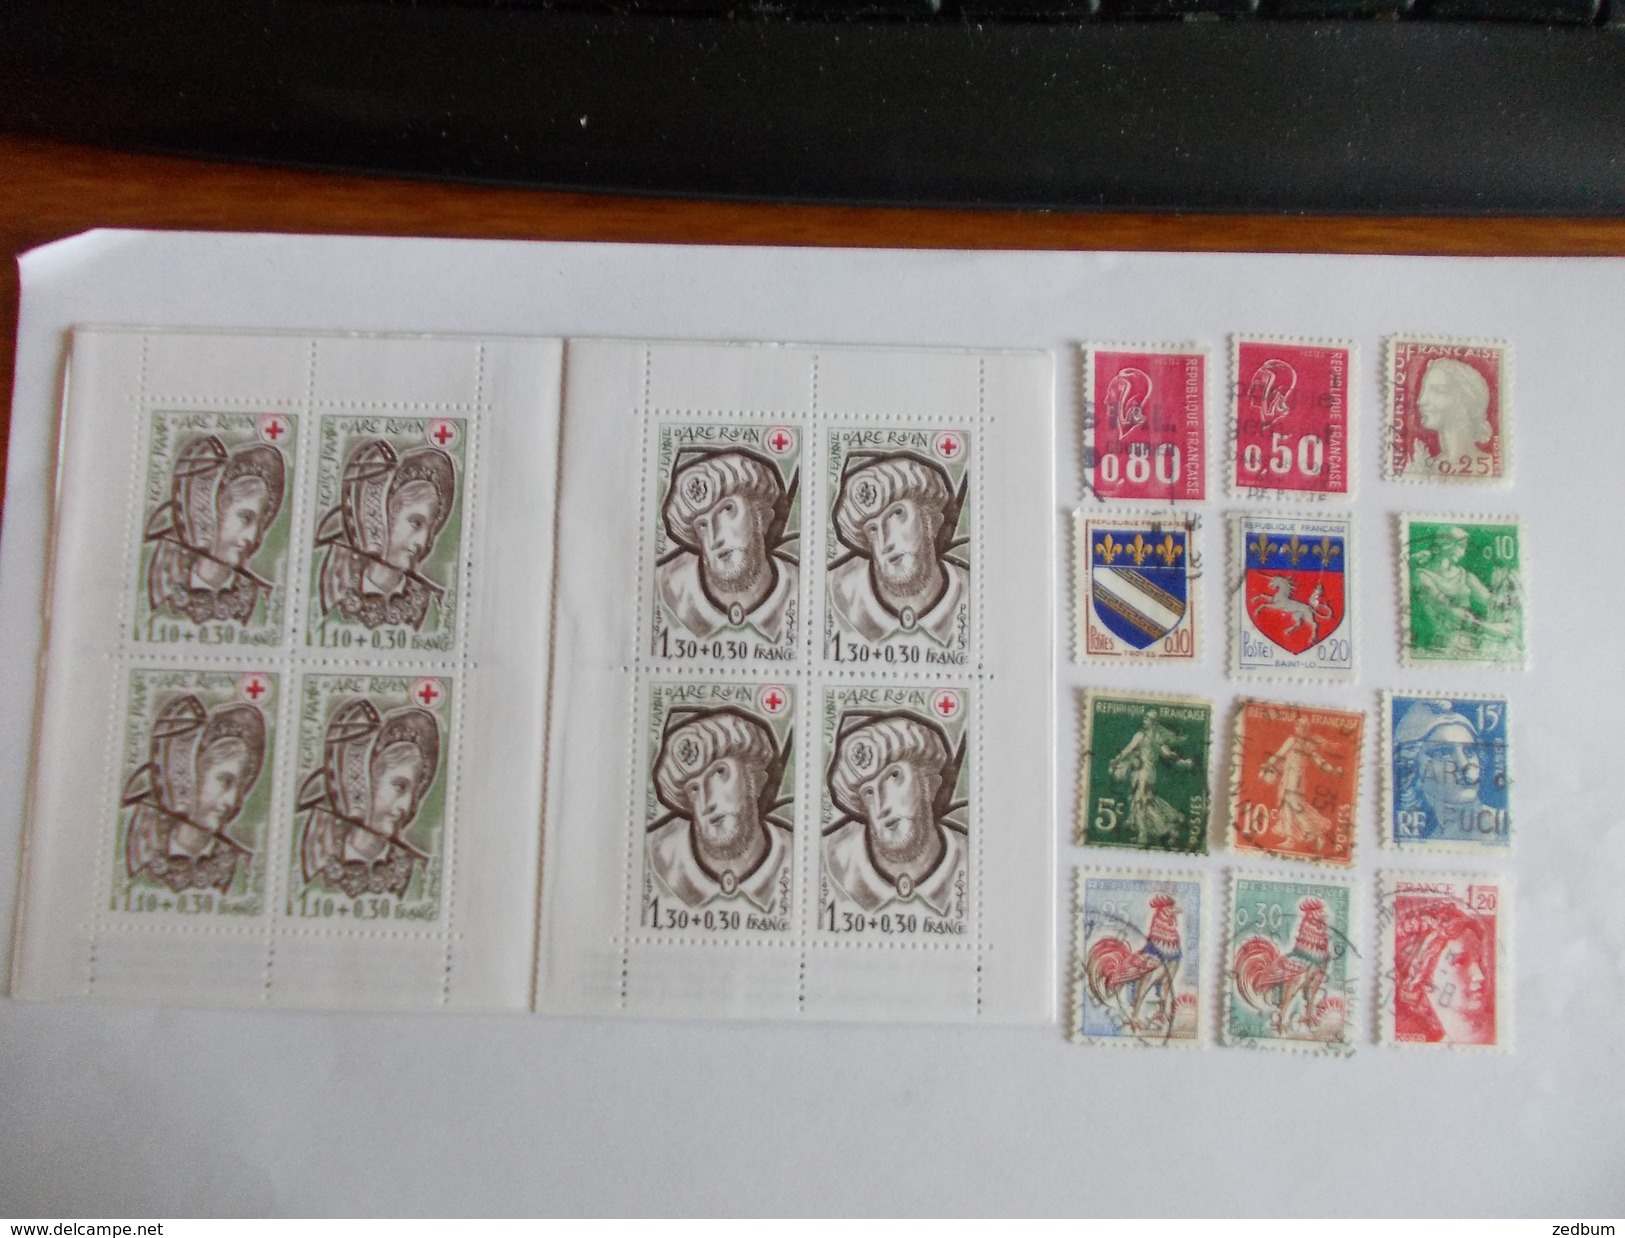 TIMBRE France Lot De à Timbres à Identifier Croix Rouge 1979 N° 640 - Lots & Kiloware (mixtures) - Max. 999 Stamps